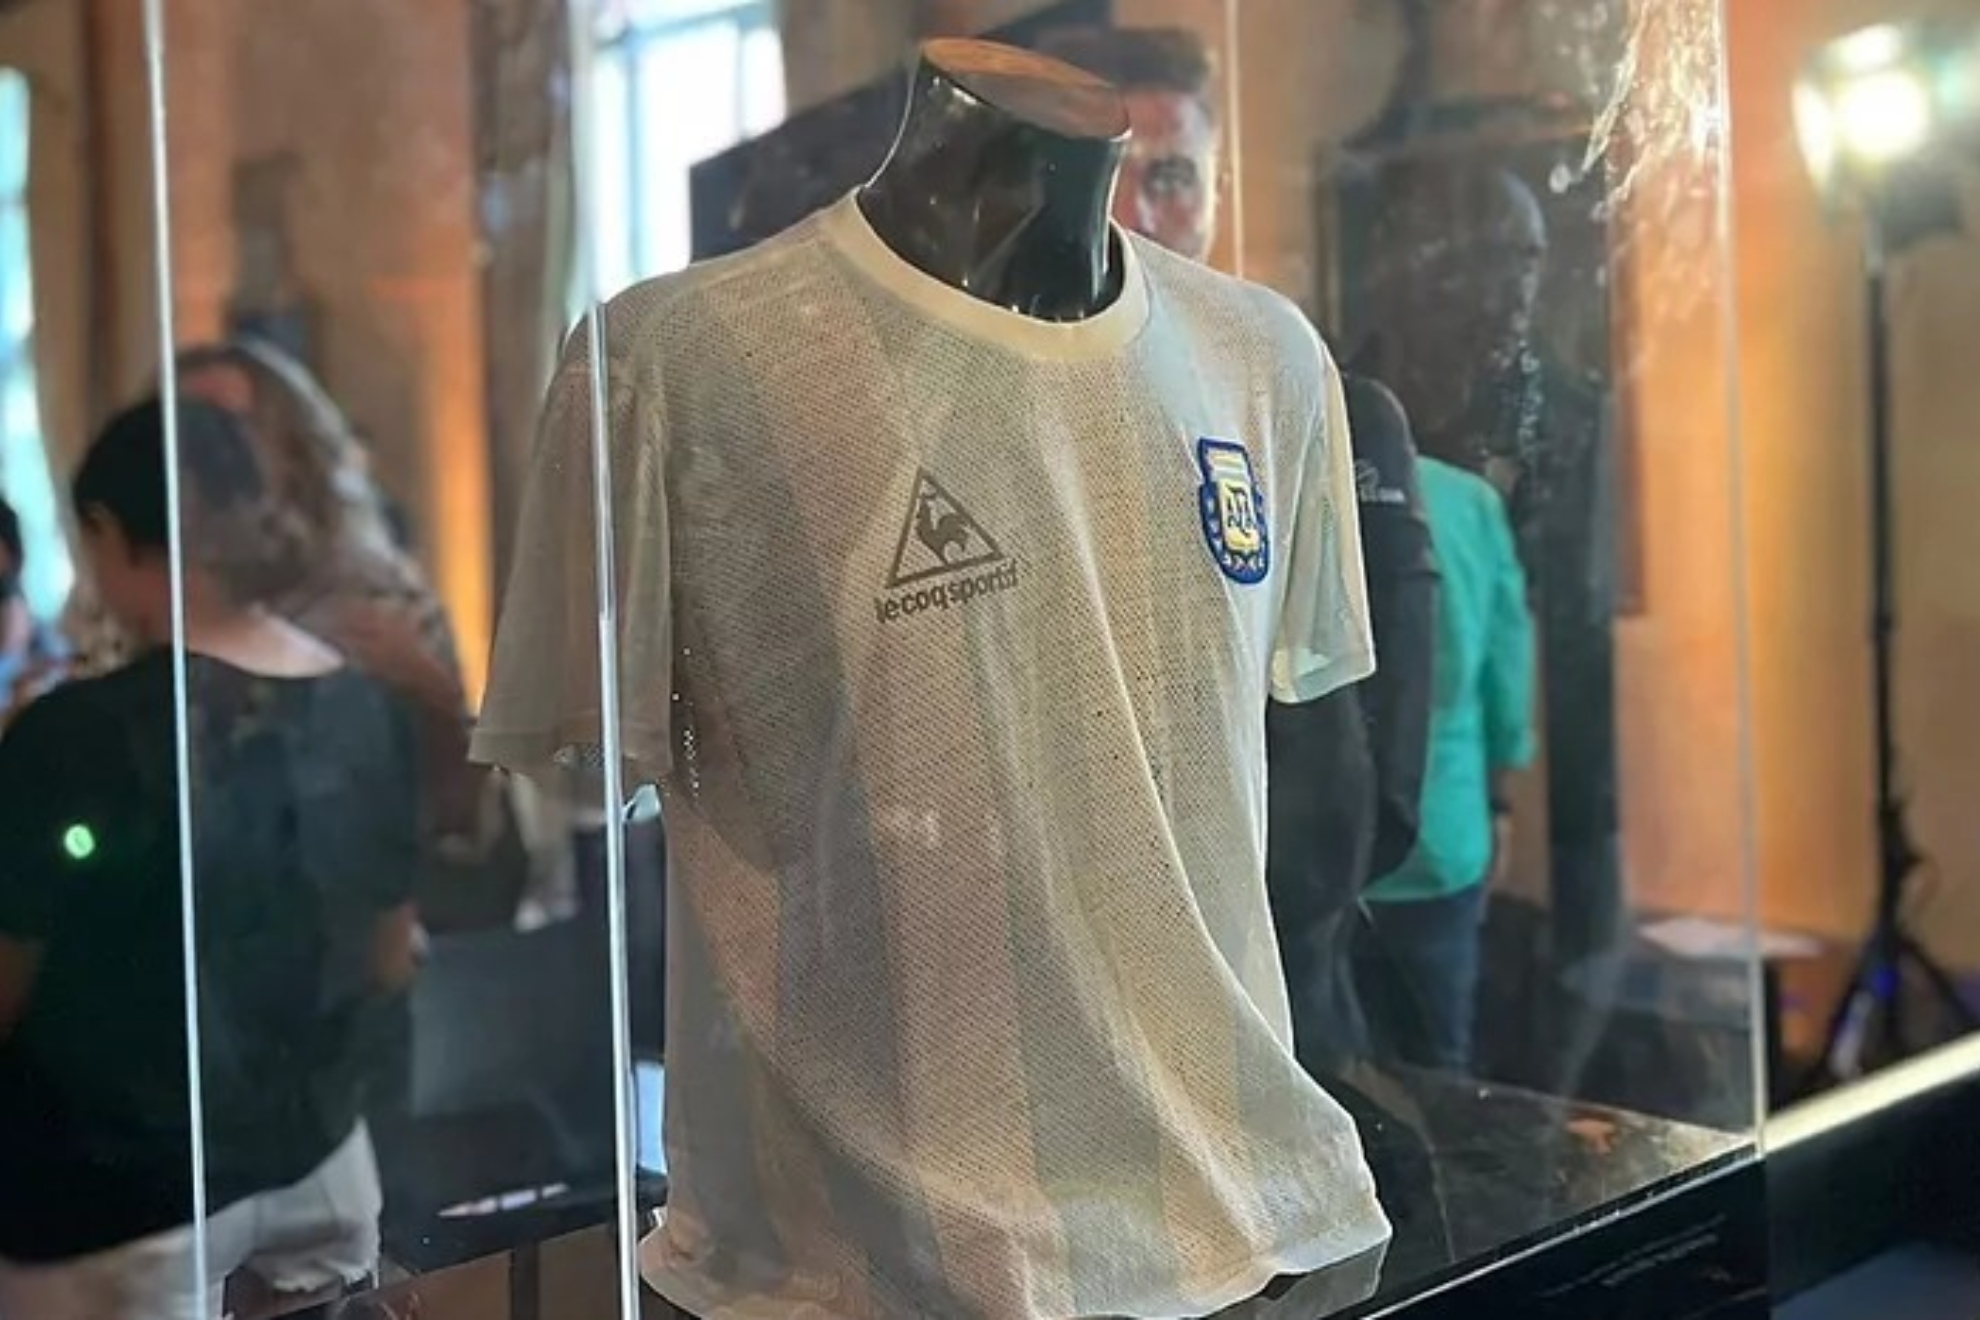 La camiseta de Maradona durante la exposición. IGNACIO LÓPEZ